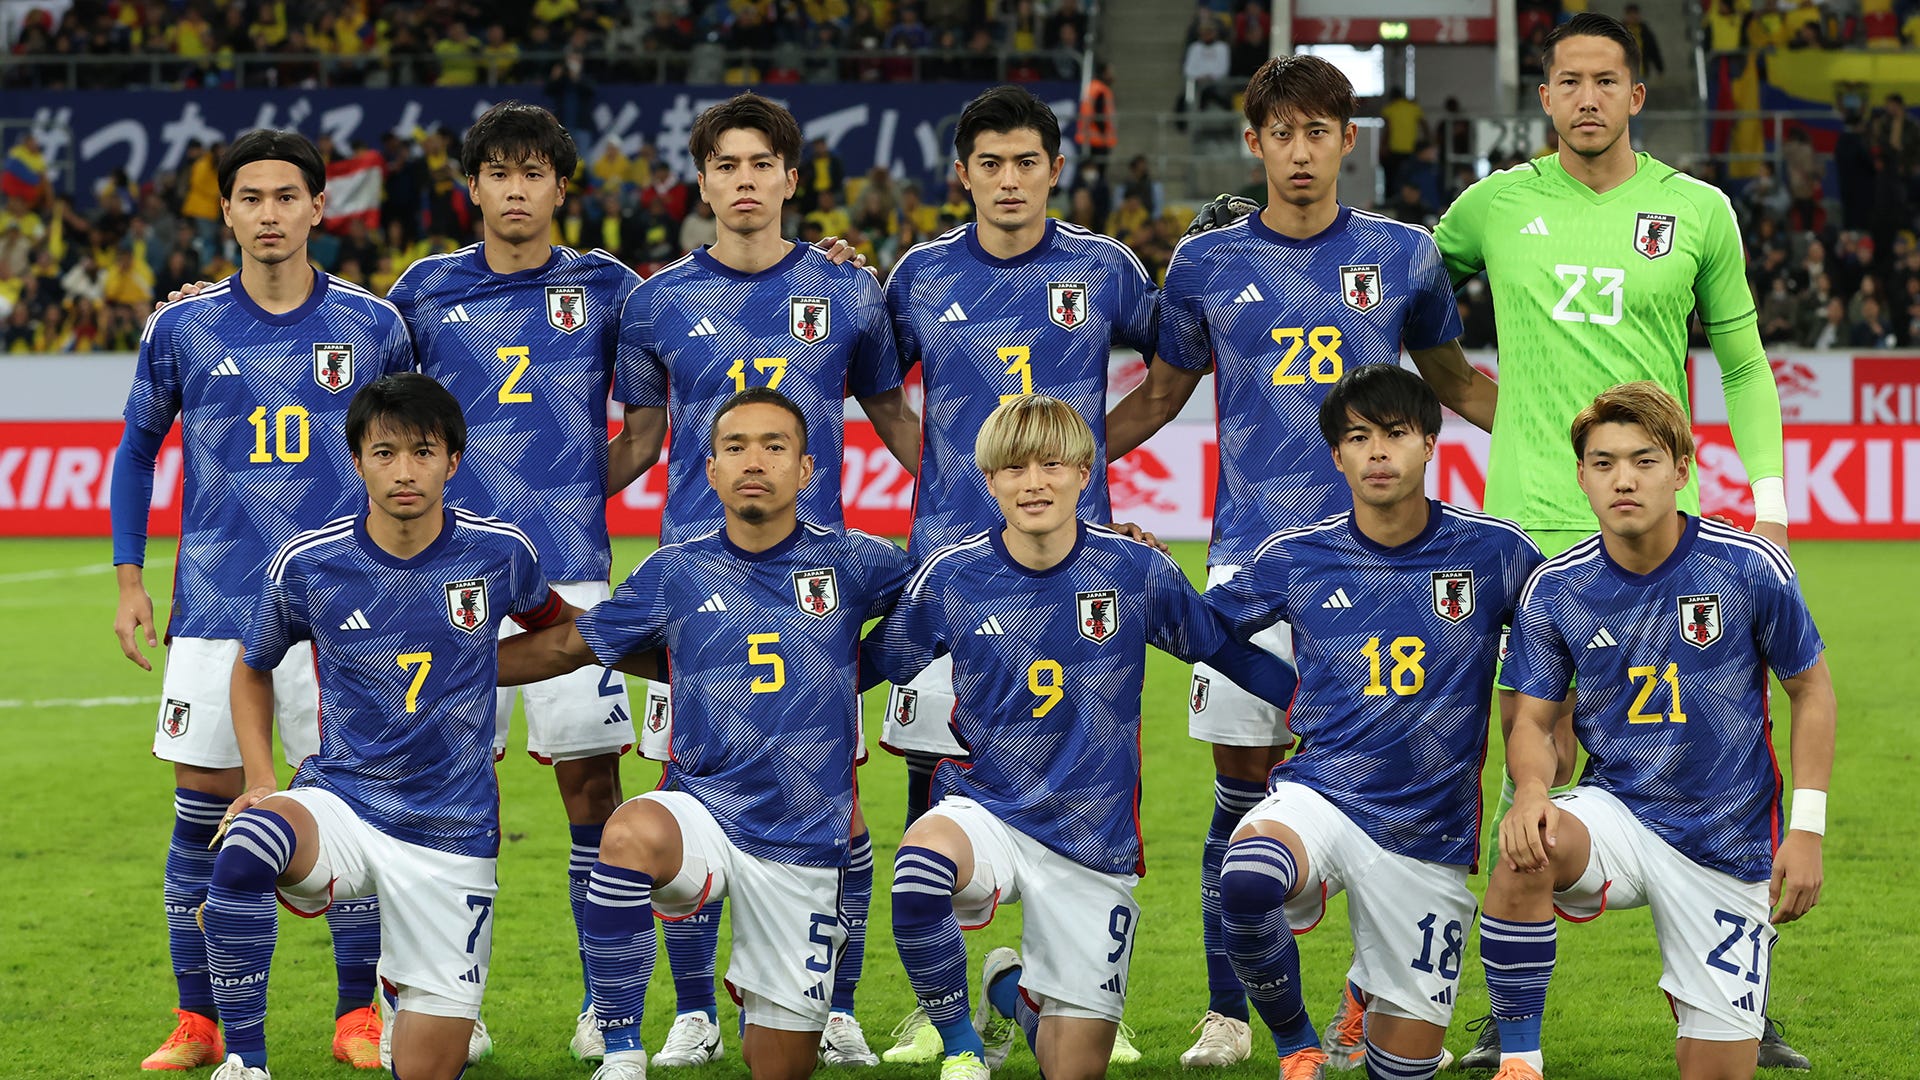 試合テキスト速報 サッカー日本代表vsエクアドル代表 キリンチャレンジカップ22 Goal Com 日本